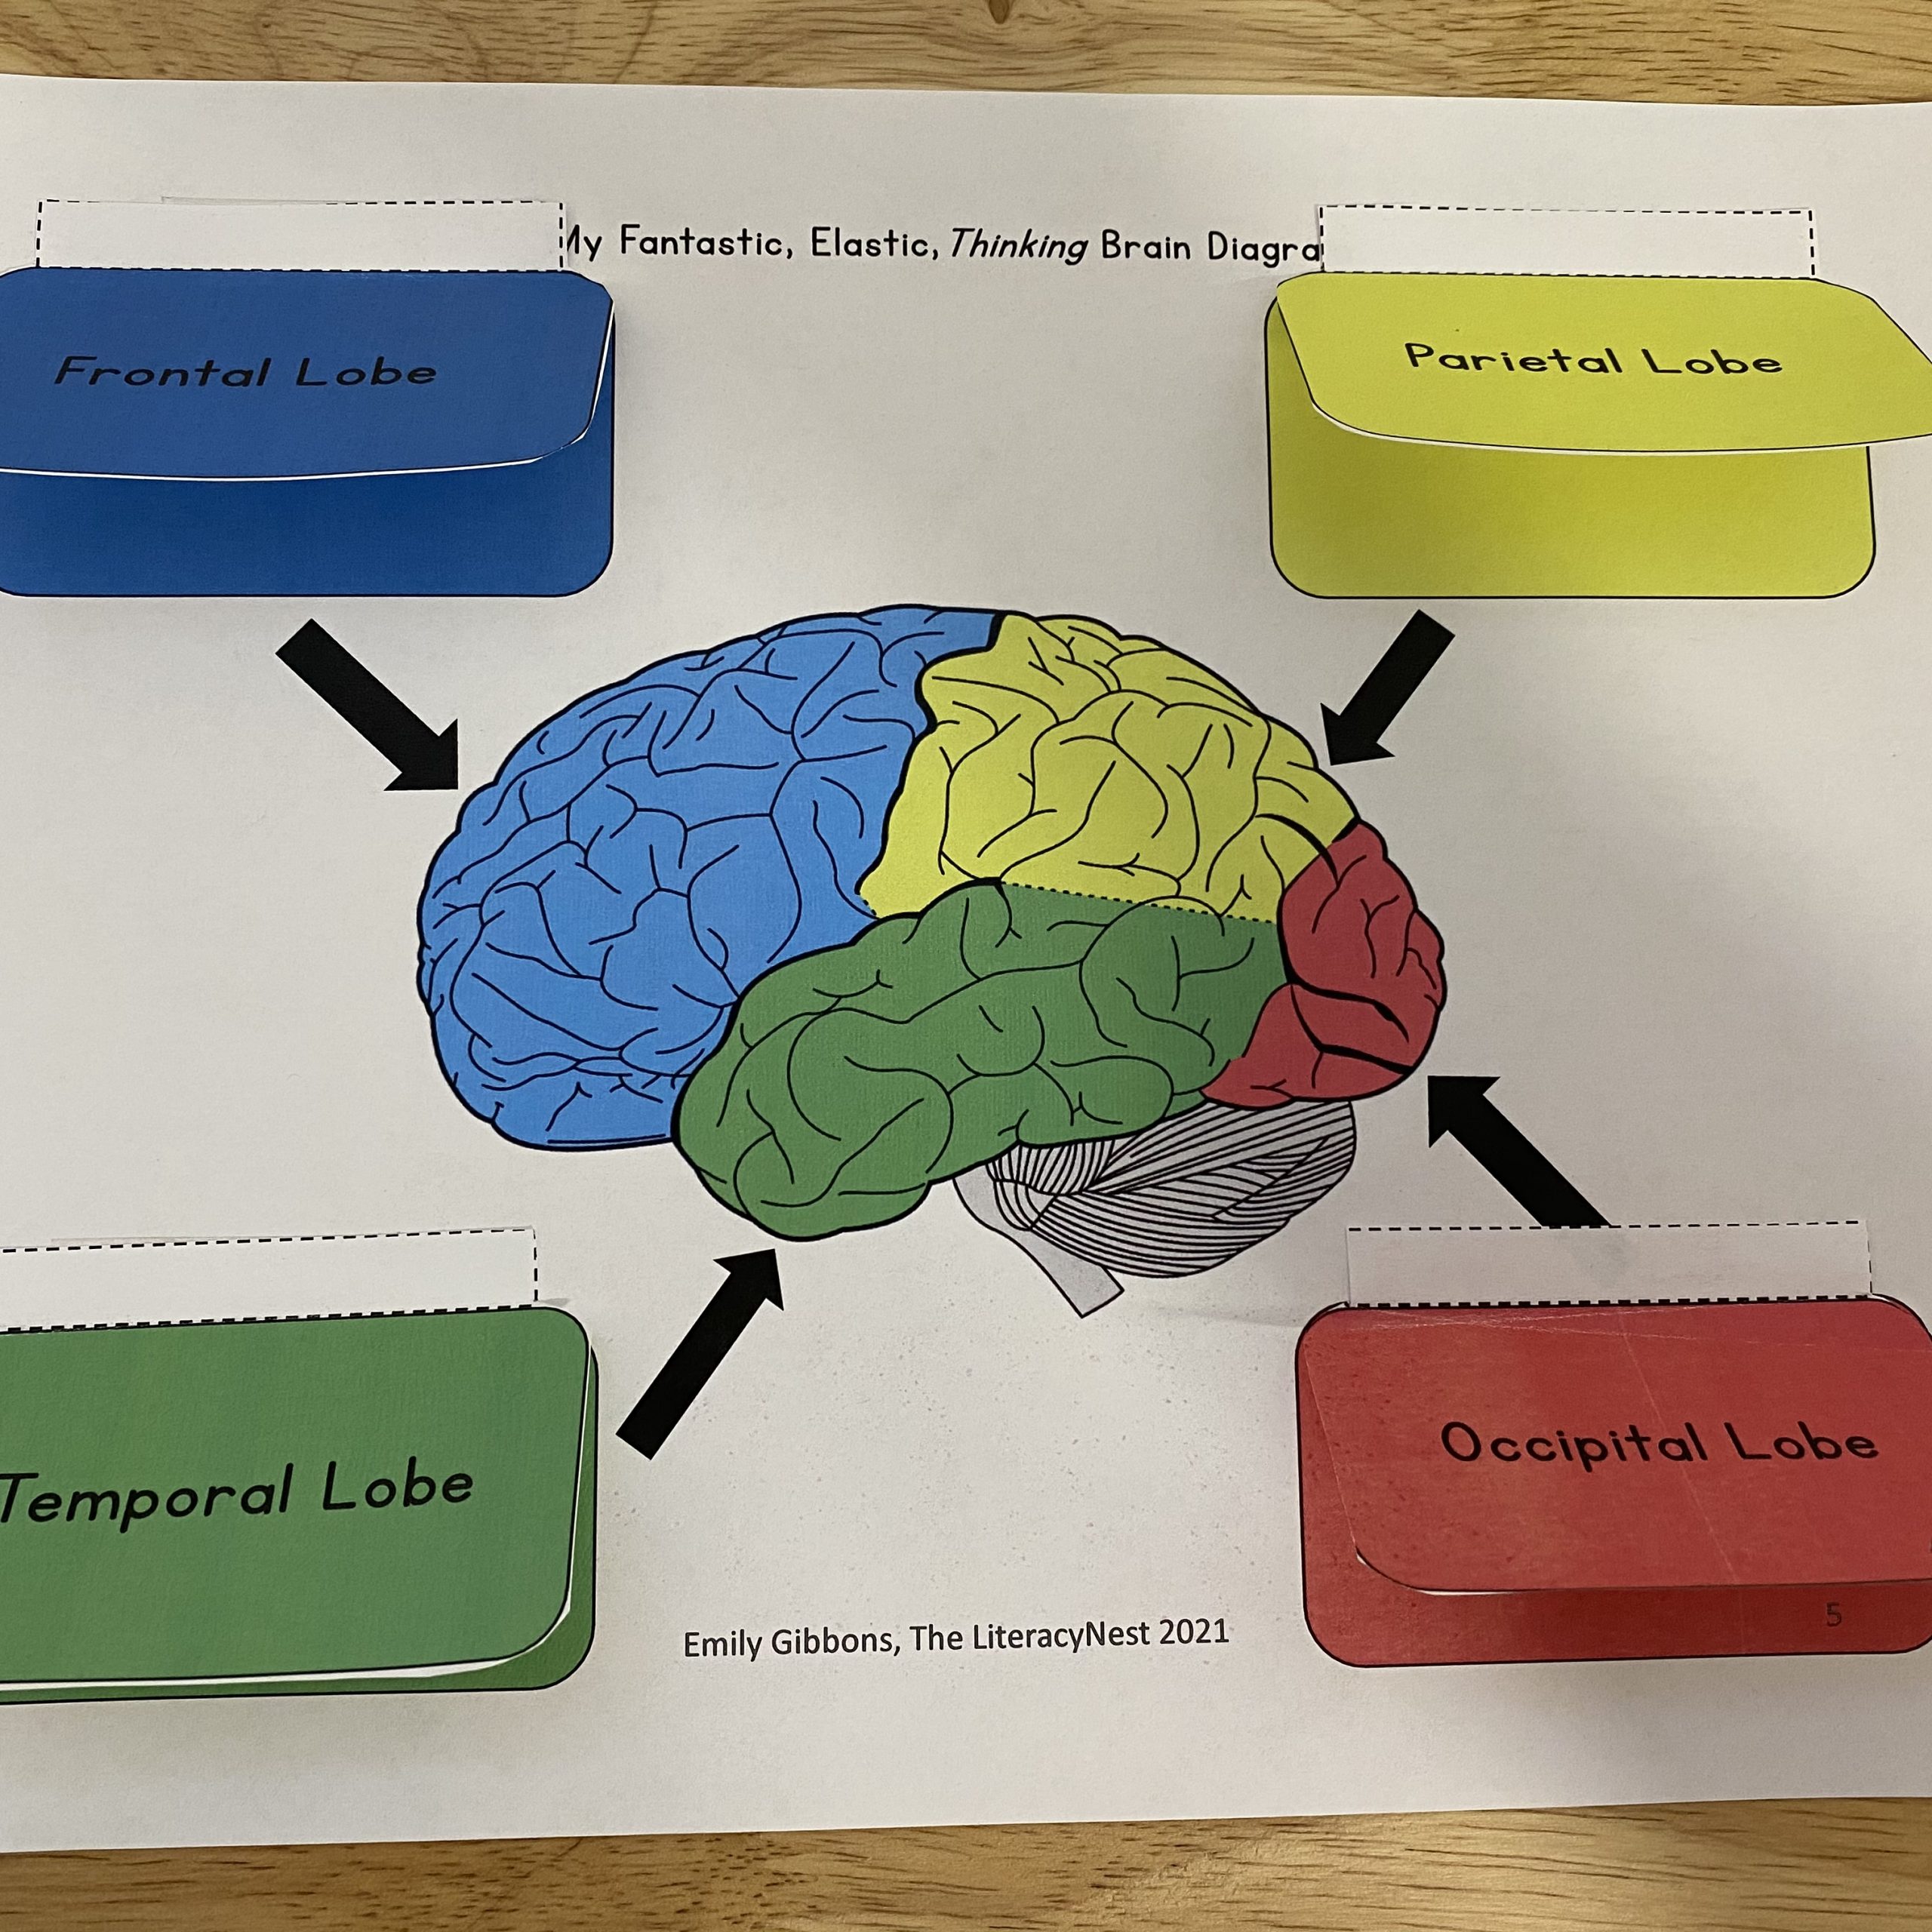 Brain Function Diagram For Kids